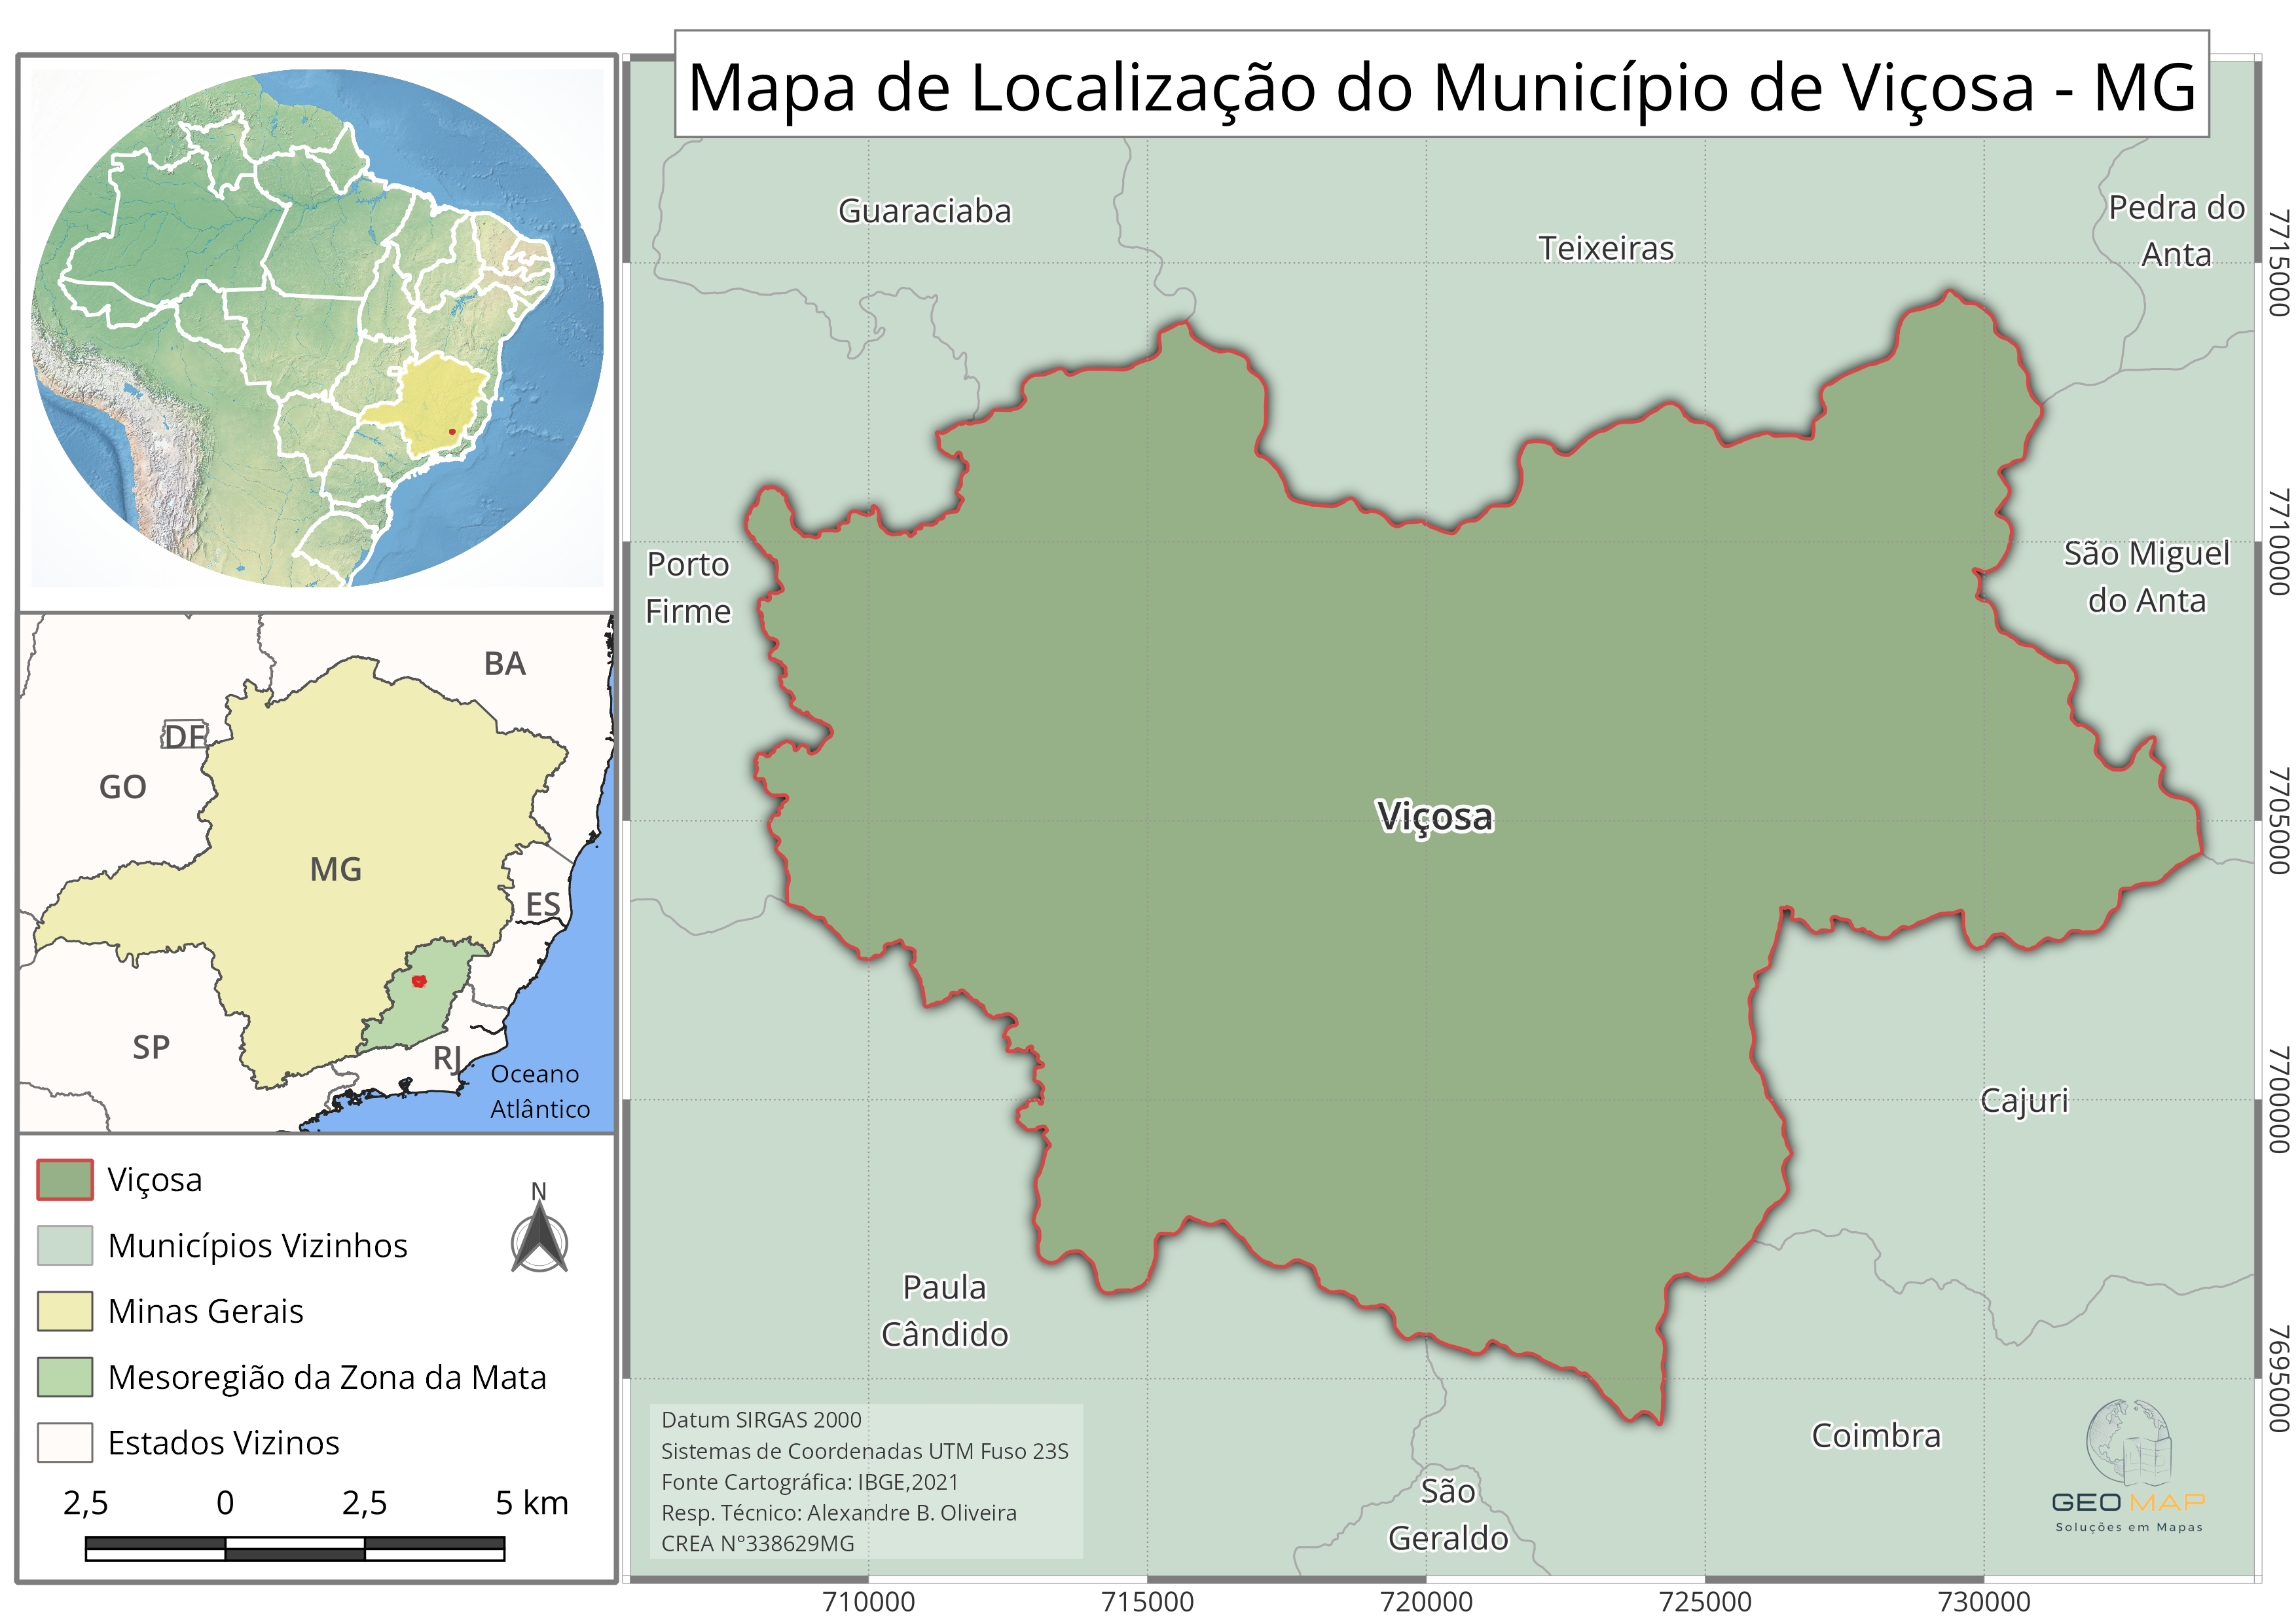 Mapa de Localização Viçosa - MG